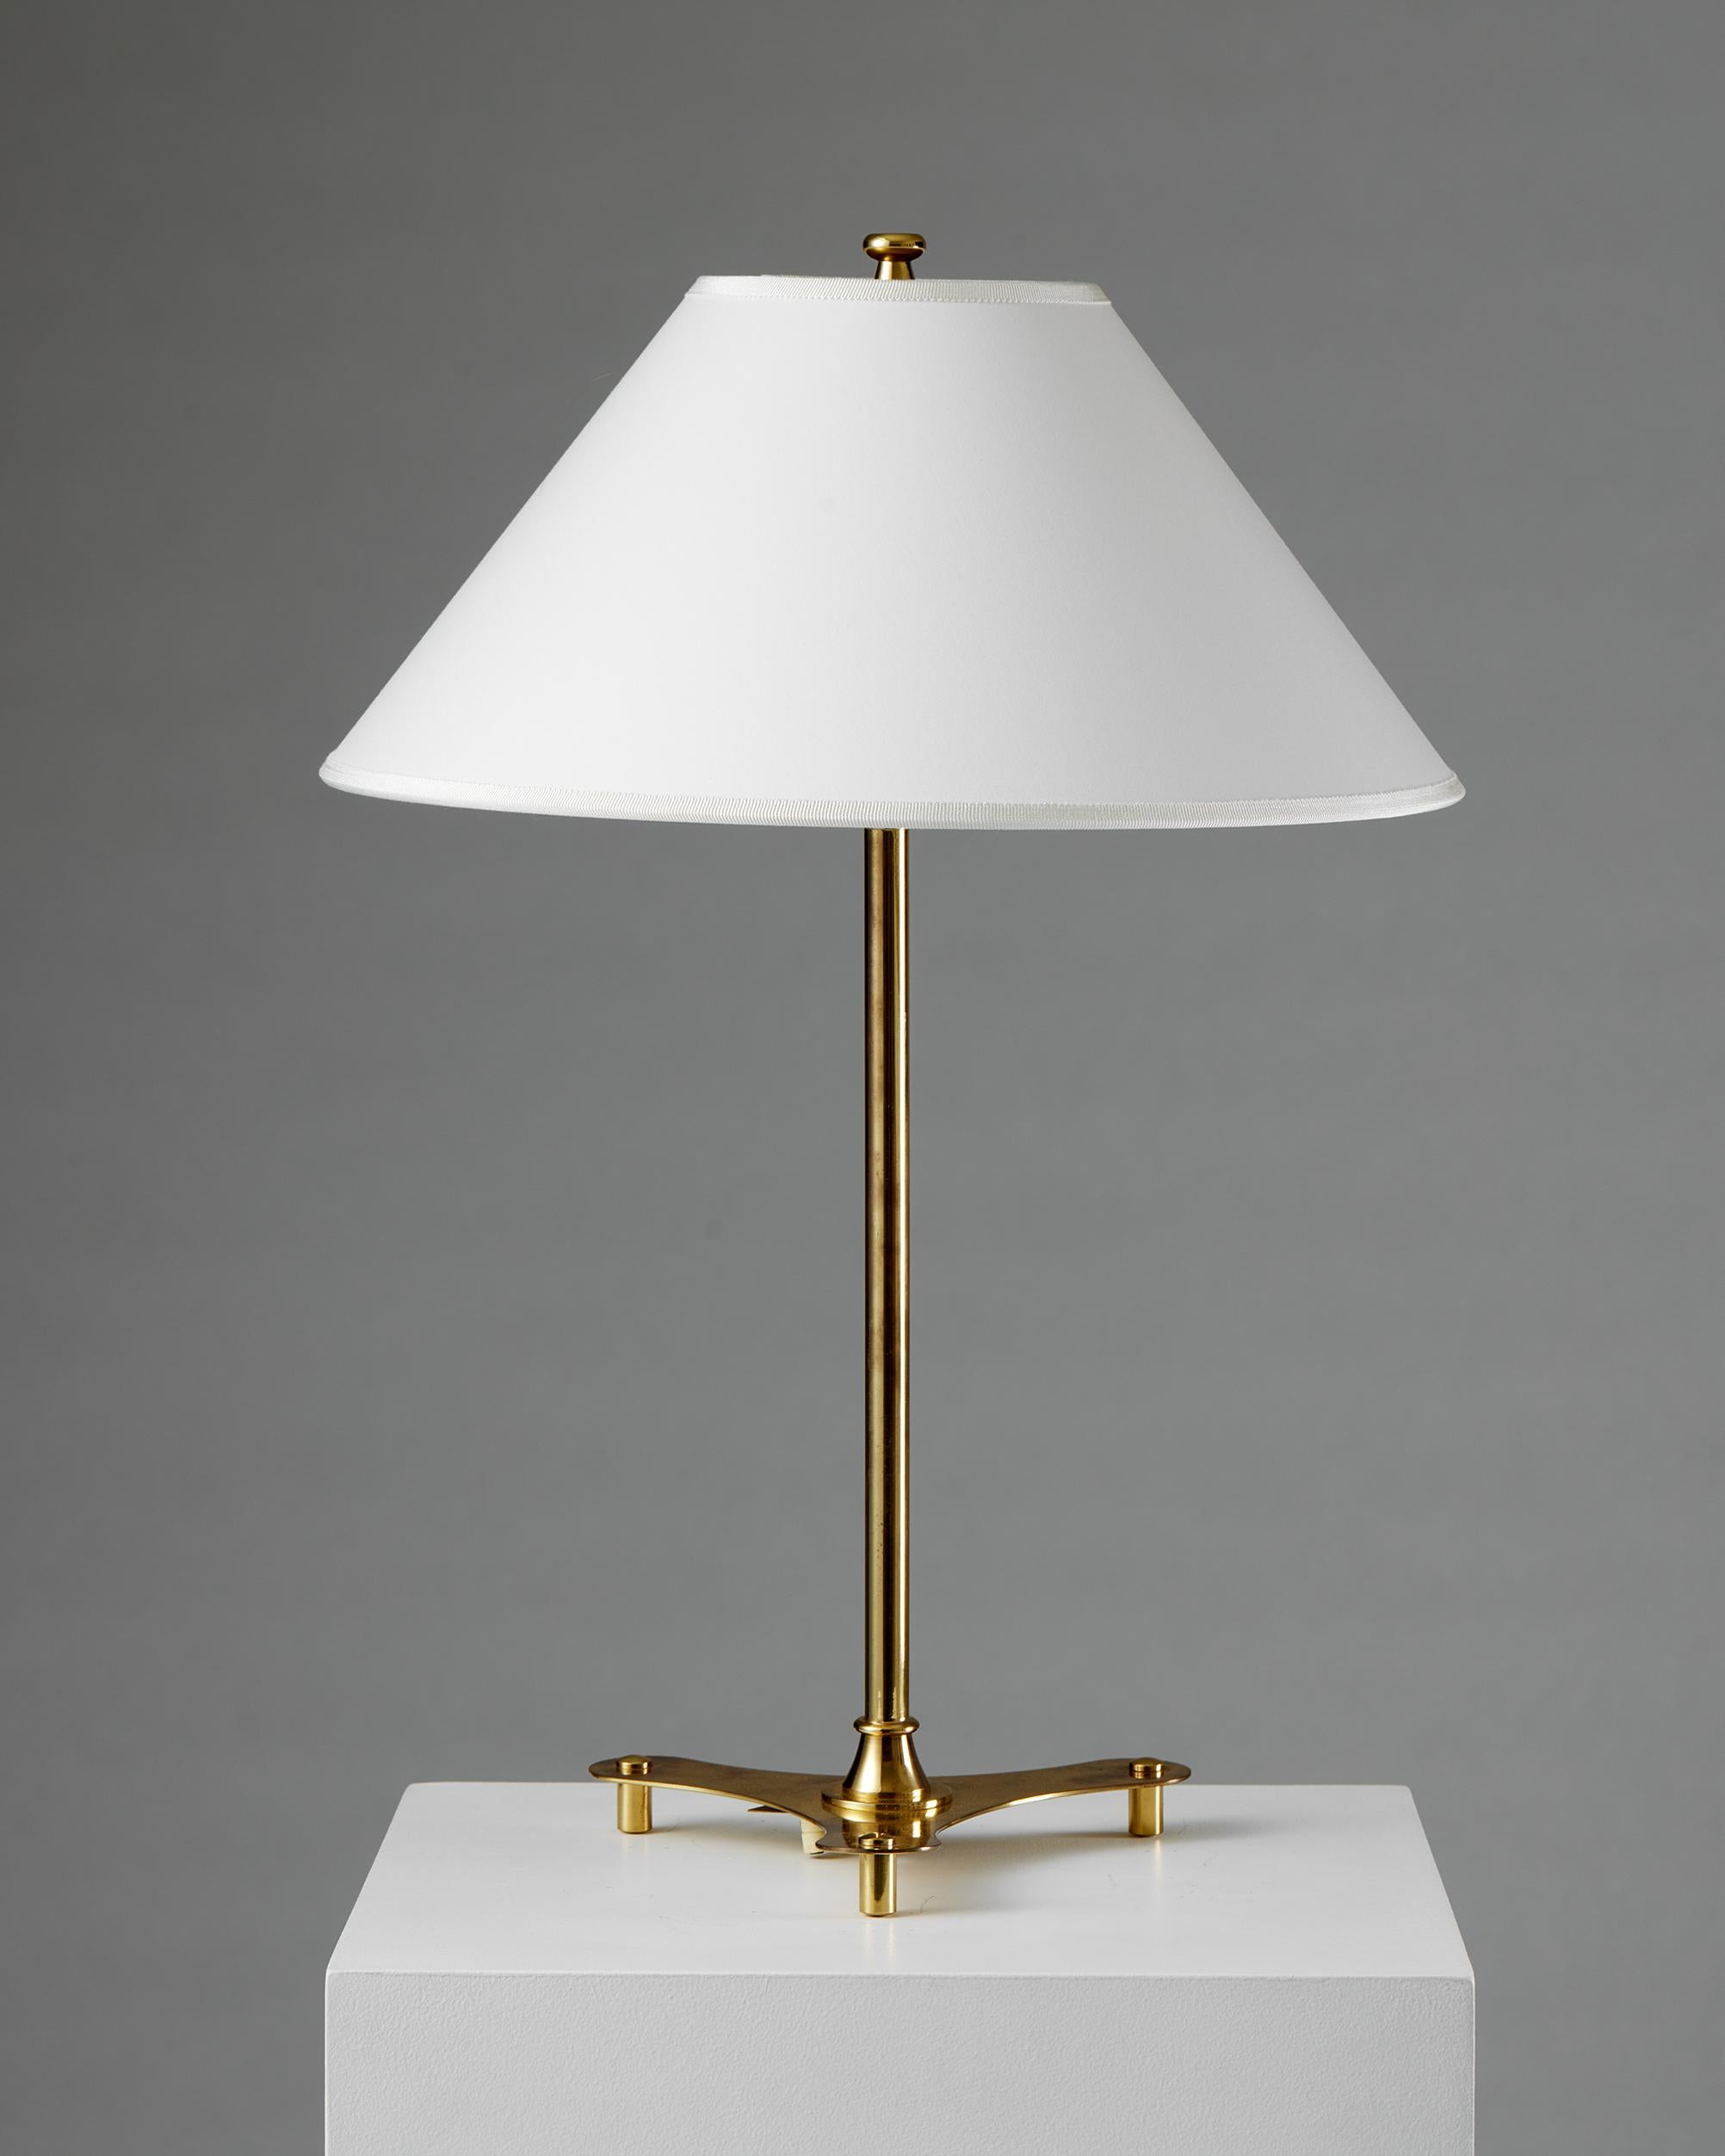 Suédois Paire de lampes de table modèle 2552 conçues par Josef Frank pour Svenskt Tenn, années 1950